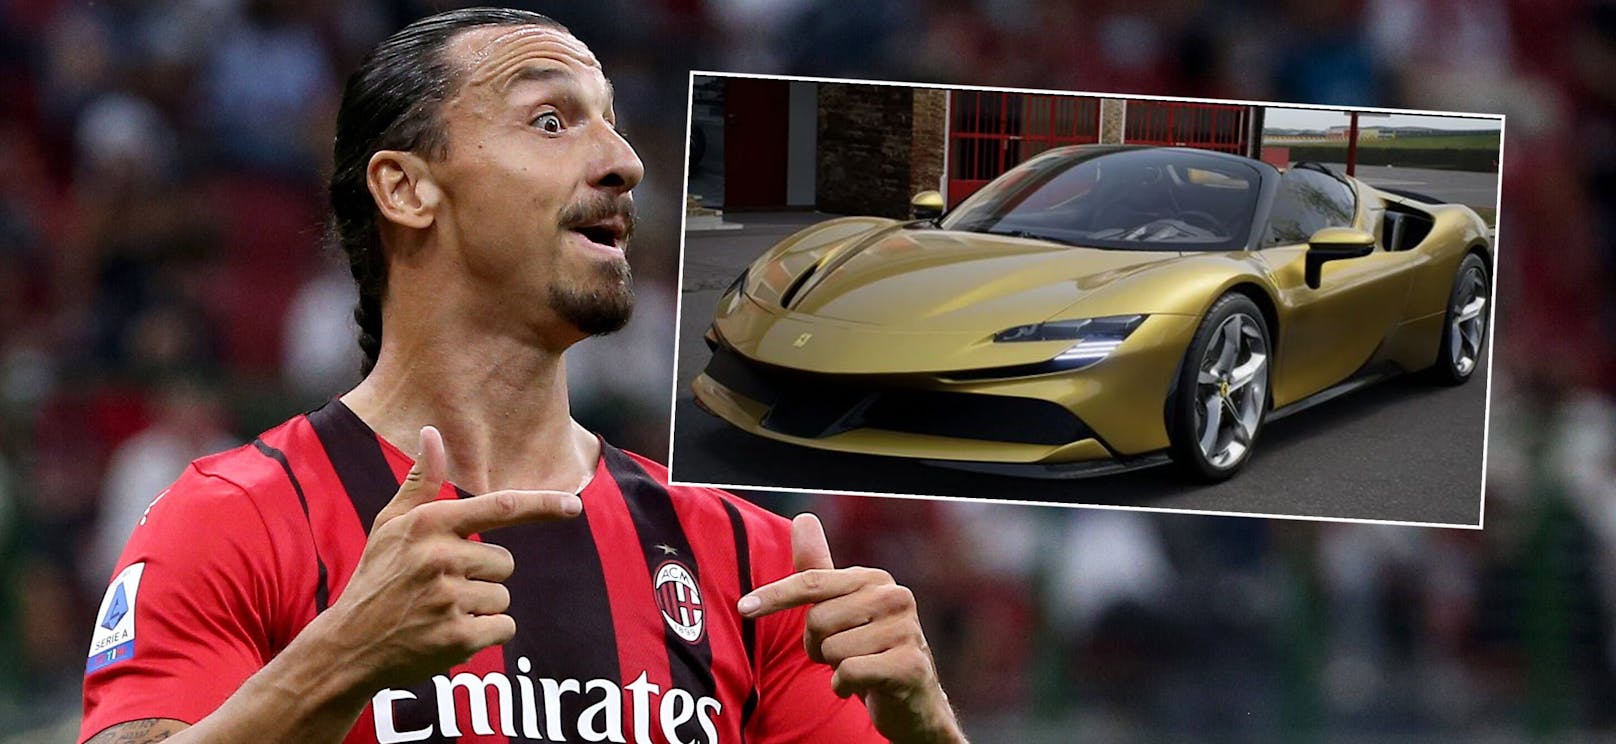 Ibrahimovic schenkt sich zum 40er goldenen Ferrari